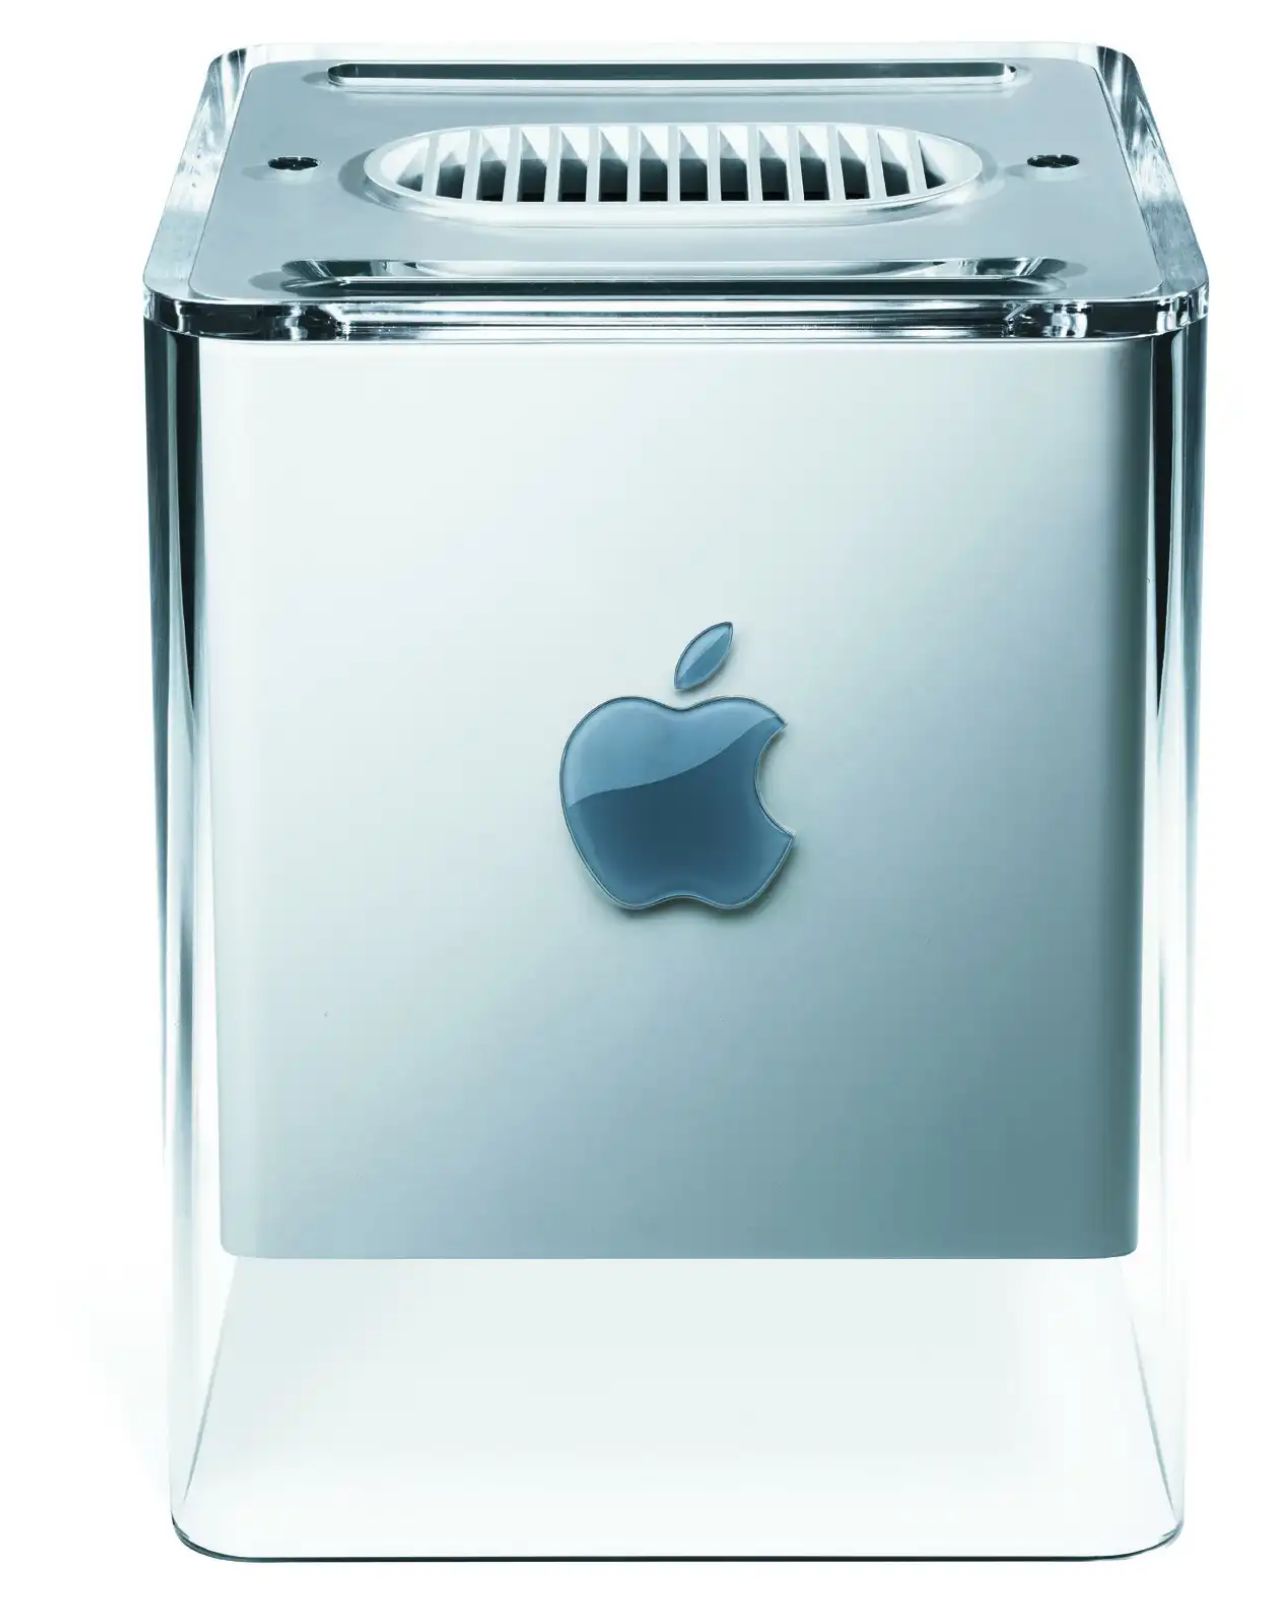 Der Power Mac G4 Cube in voller Schönheit (Foto: Apple)